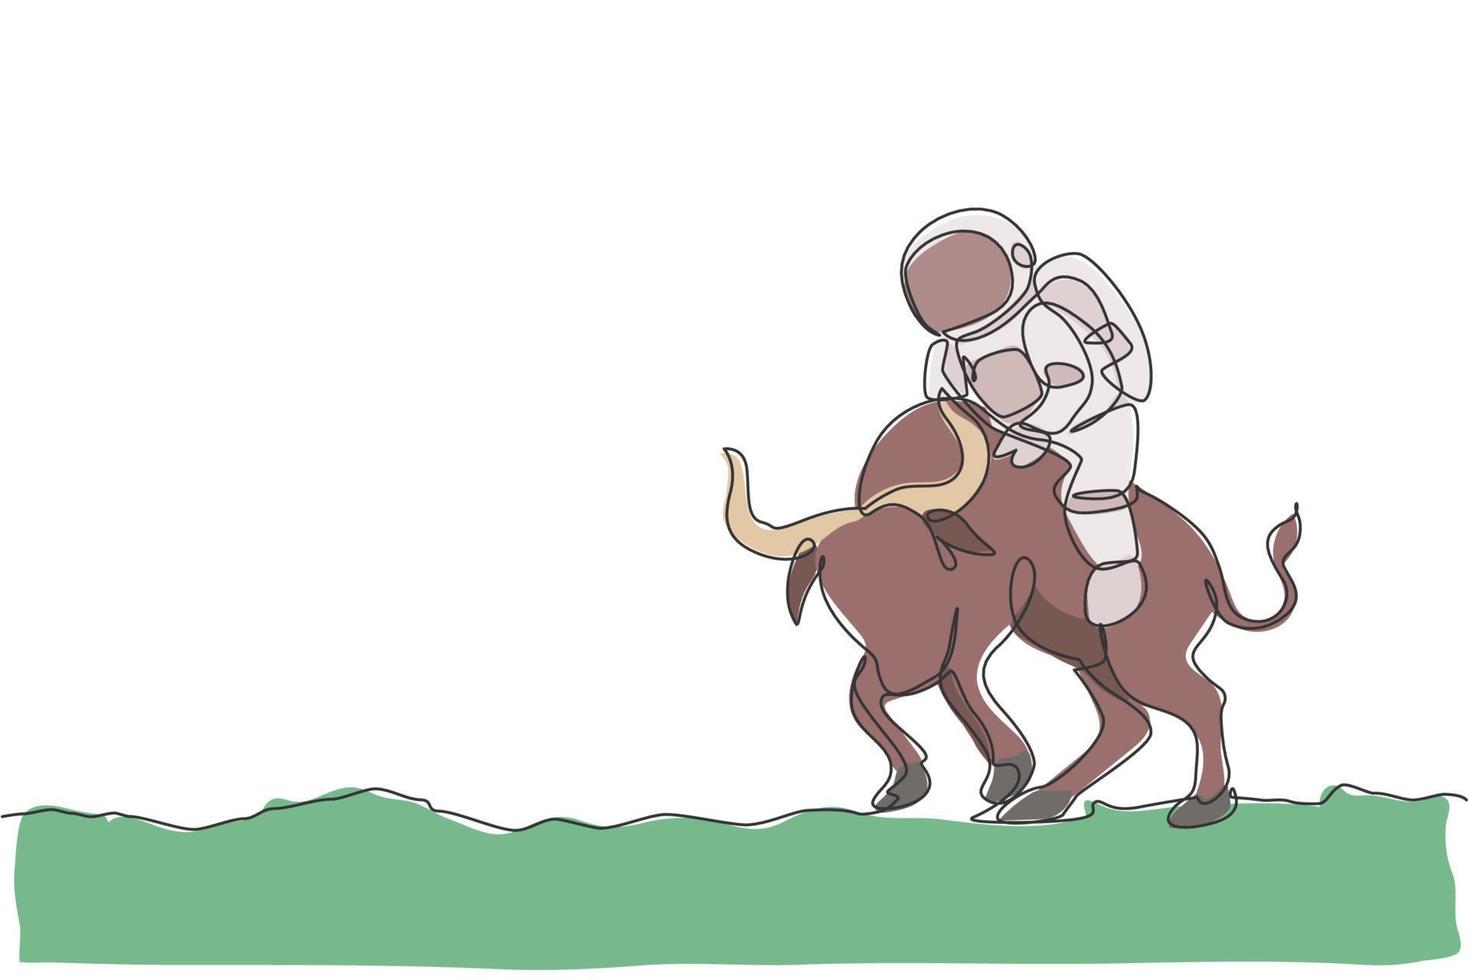 un dibujo de línea continua de un astronauta paseando montando un toro enojado, un animal salvaje en la superficie de la luna. concepto de viaje de safari en el espacio profundo. Ilustración de vector de diseño gráfico de dibujo de línea única dinámica